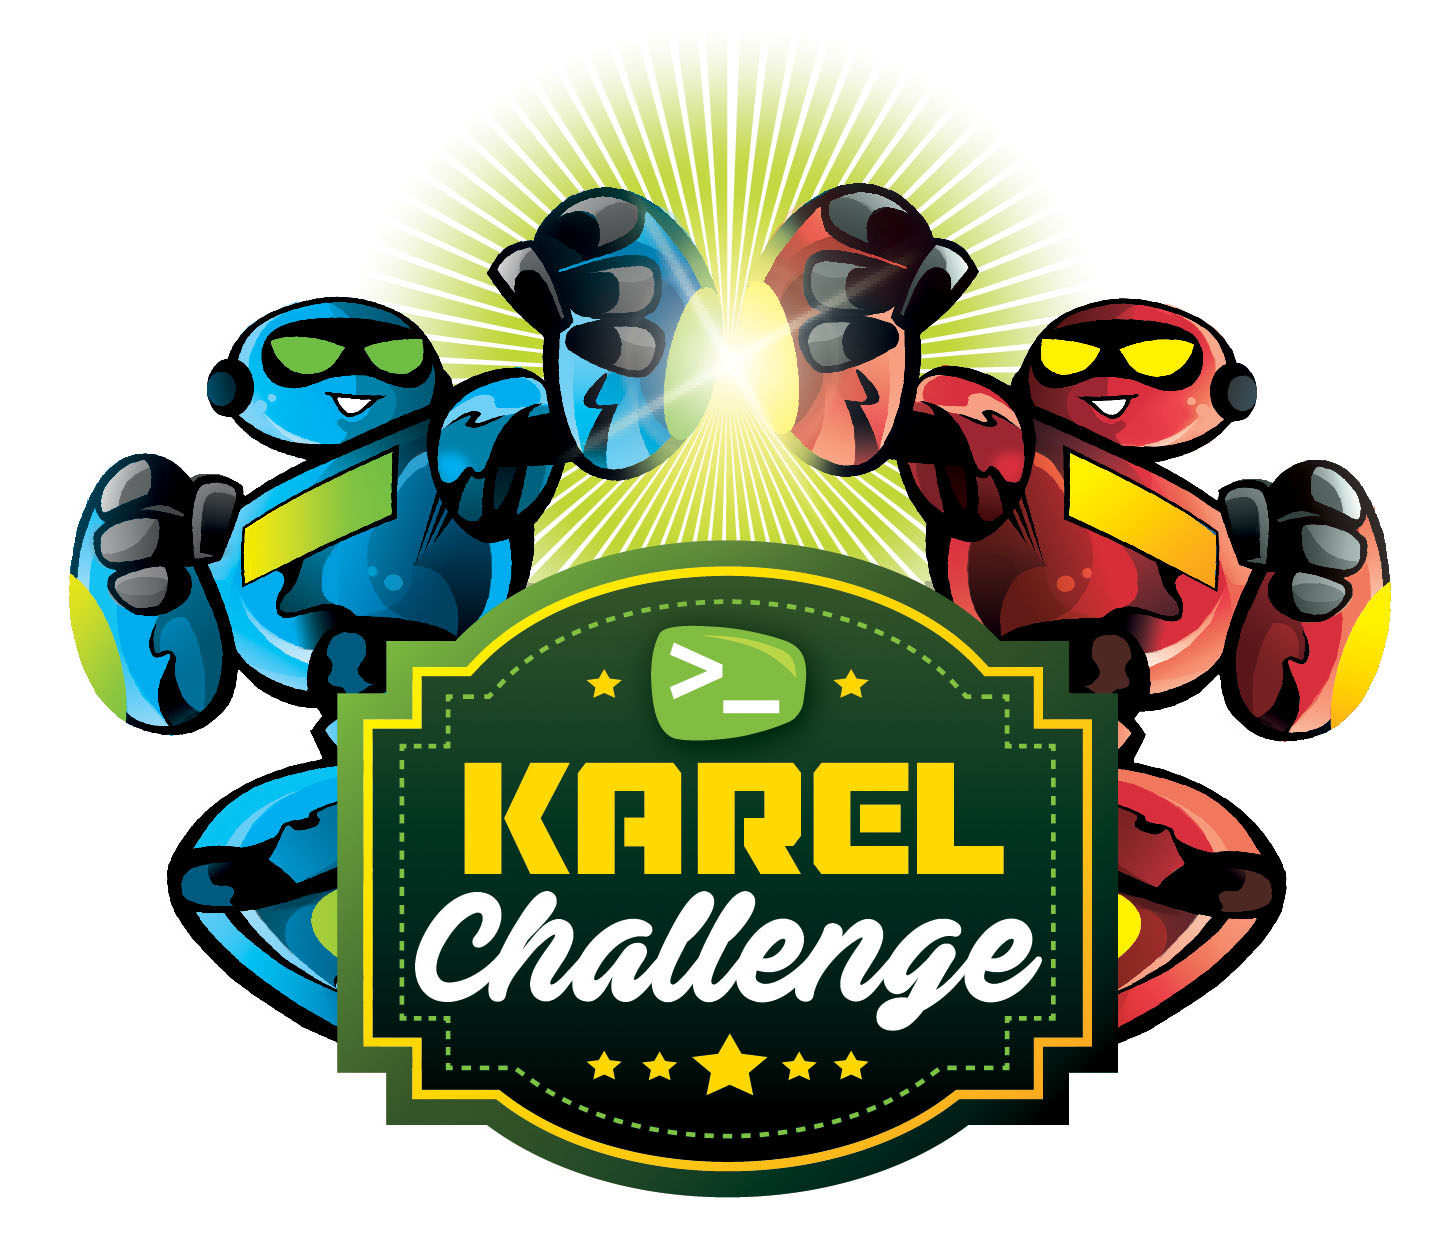 Comença el Karel Challenge 2020!